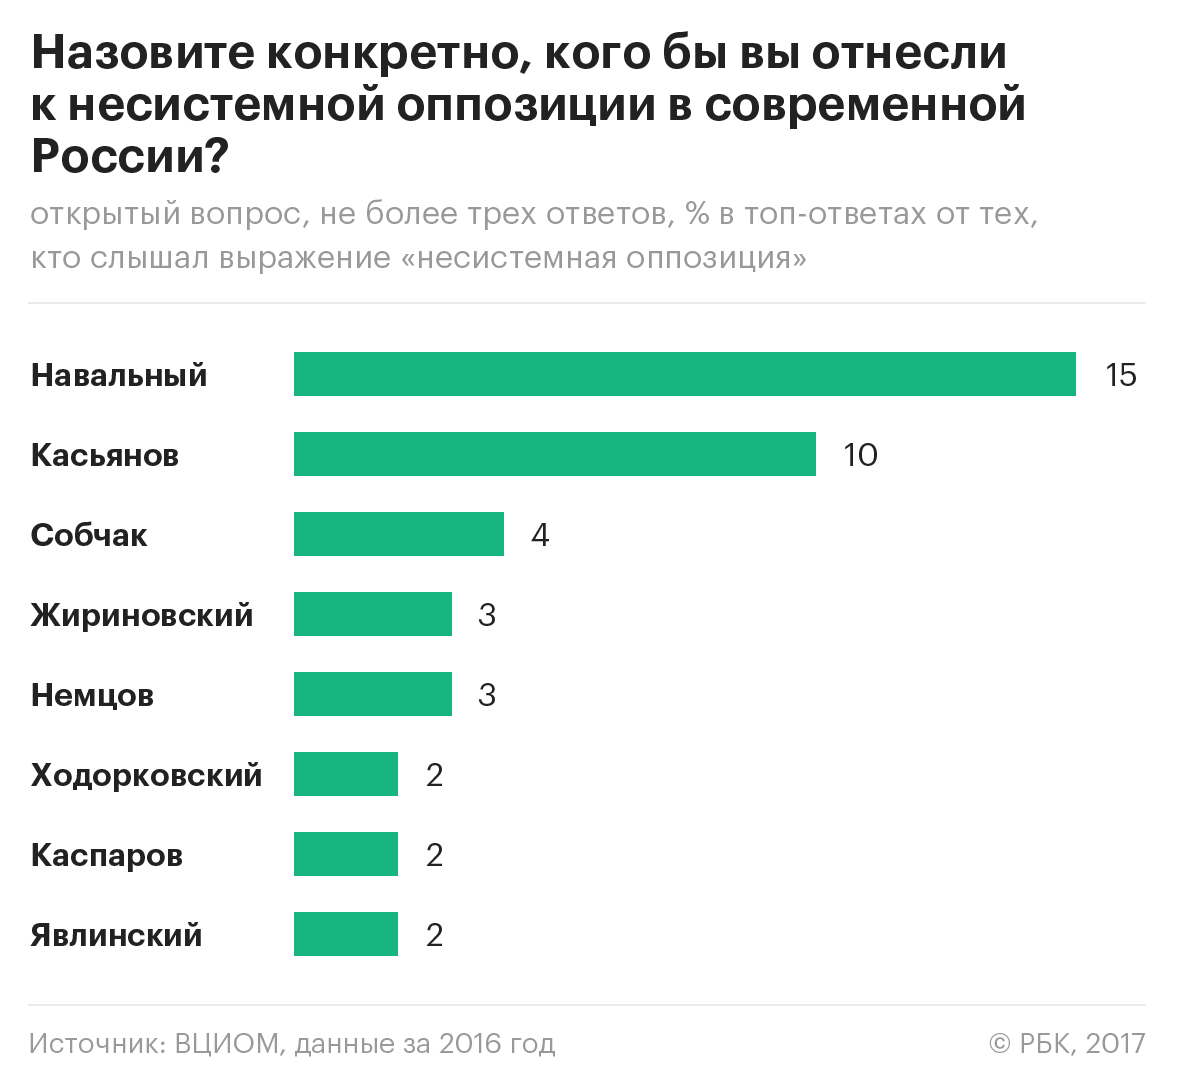 ВЦИОМ рассказал о негативном отношении большинства россиян к Собчак